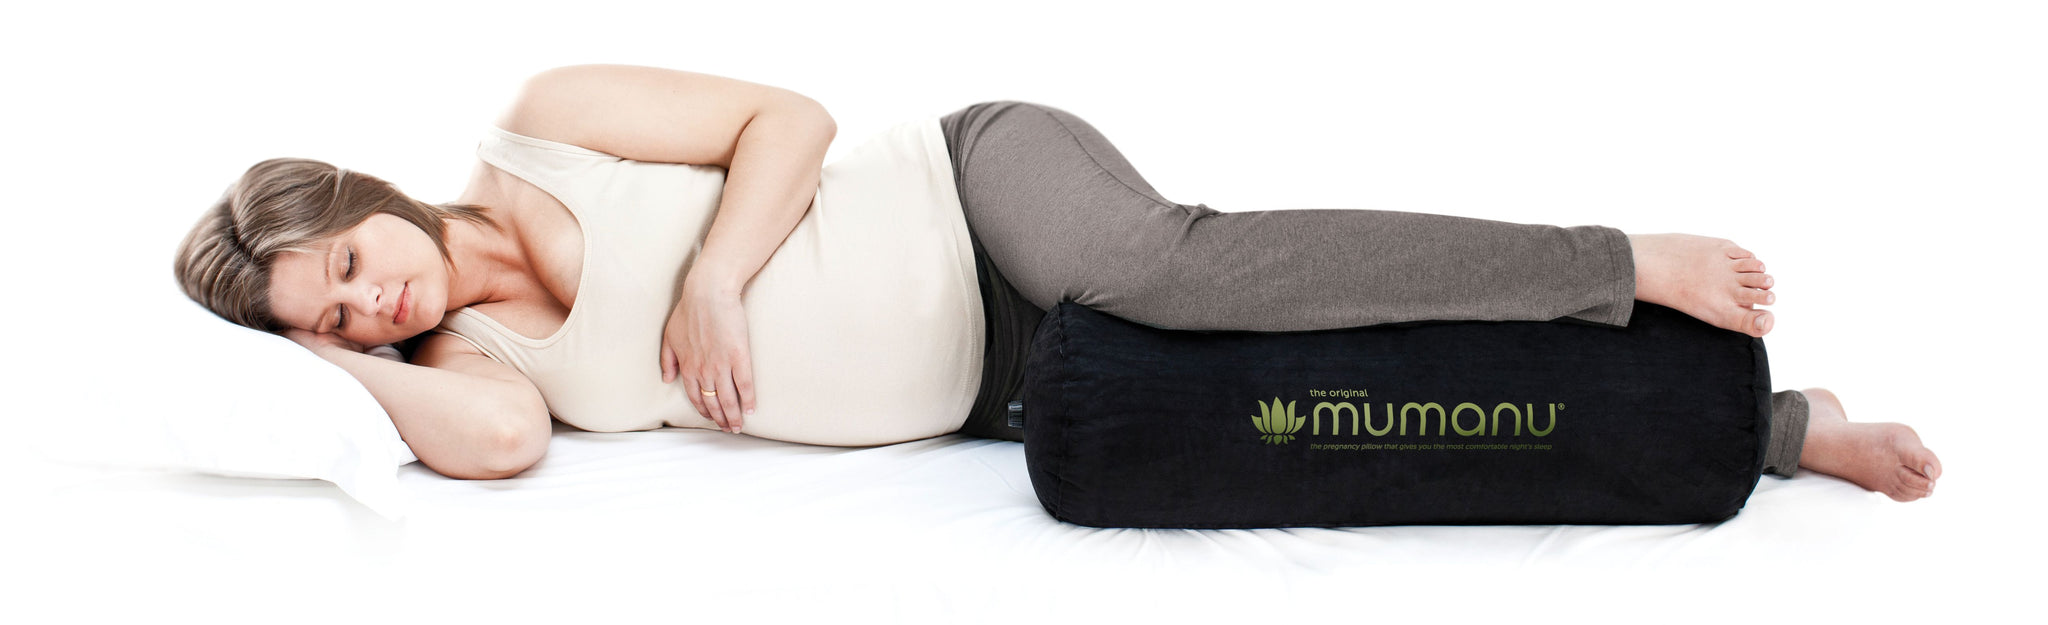 The_Original_Mumanu_Pregnancy_Pillow